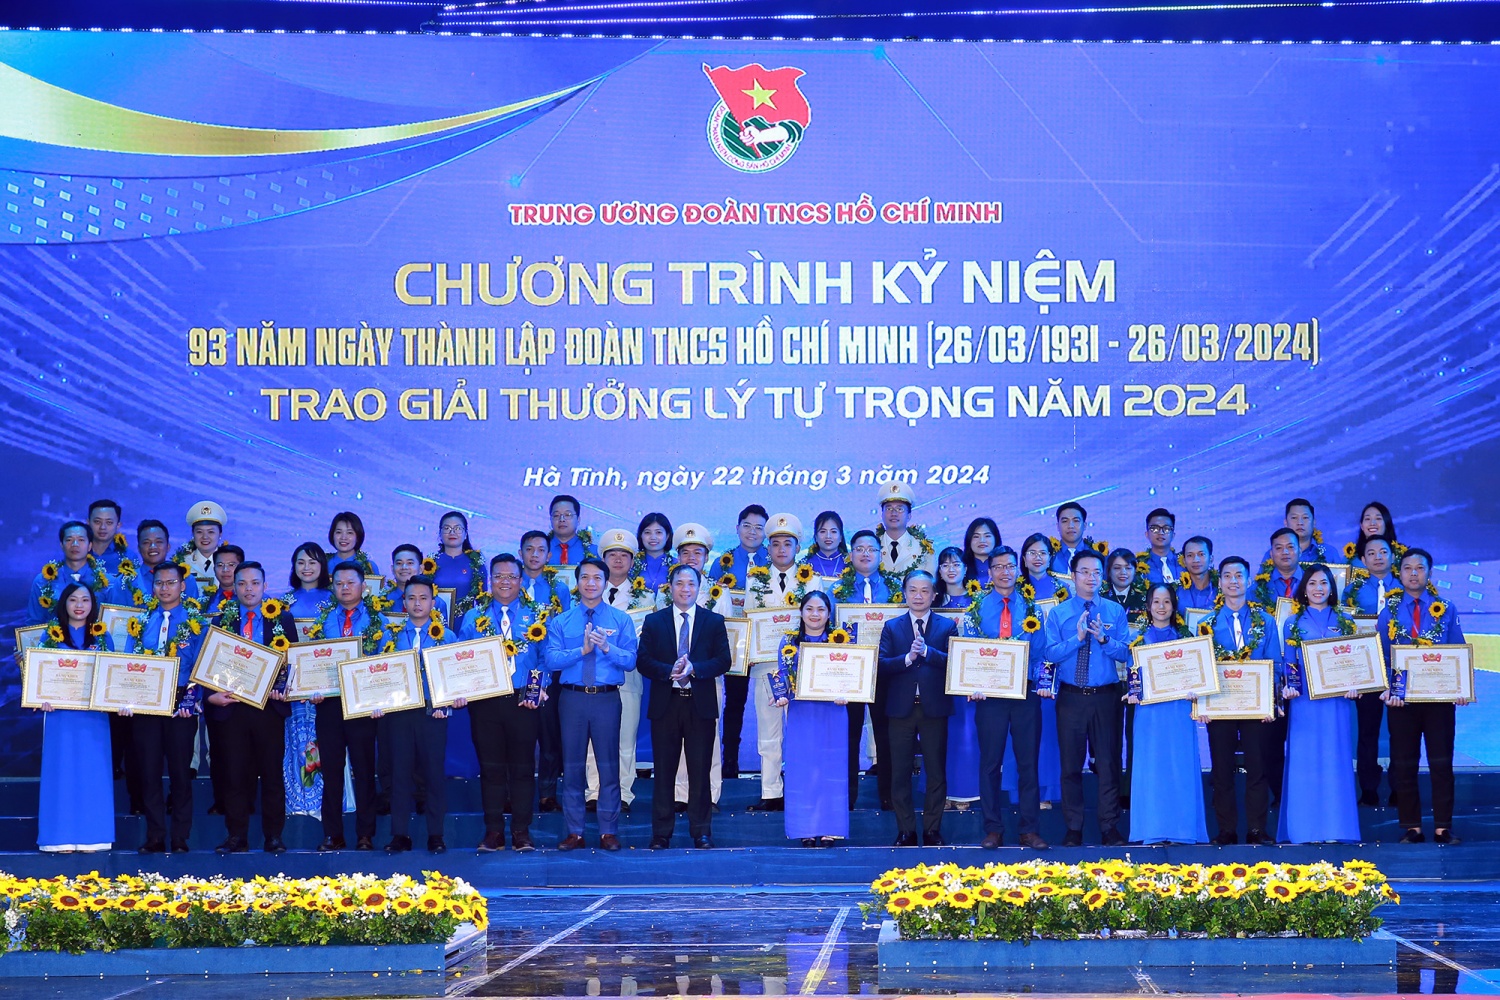 Lãnh đạo tỉnh Hà Tĩnh, Ban Dân vận Trung ương, Trung ương Đoàn TNCS Hồ Chí Minh trao Giải thưởng Lý Tự Trọng năm 2024 cho cán bộ đoàn tiêu biểu - Ảnh: VGP/Minh Khôi